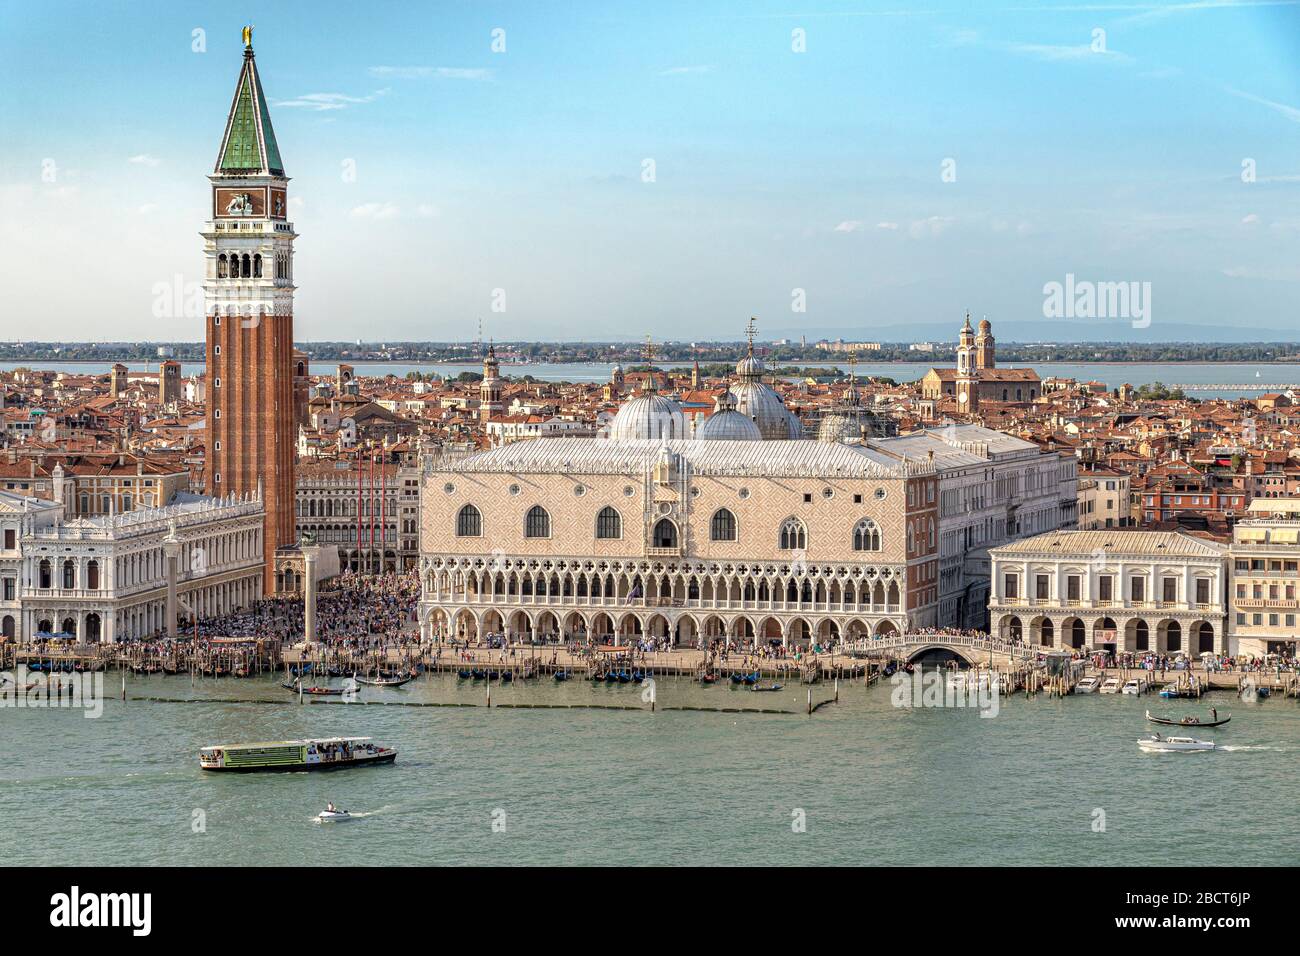 Vue aérienne de la place Saint-Marc et du Palais des Doges vue depuis la tour de la cloche de San Giorgio Maggiore, Venise, Italie Banque D'Images